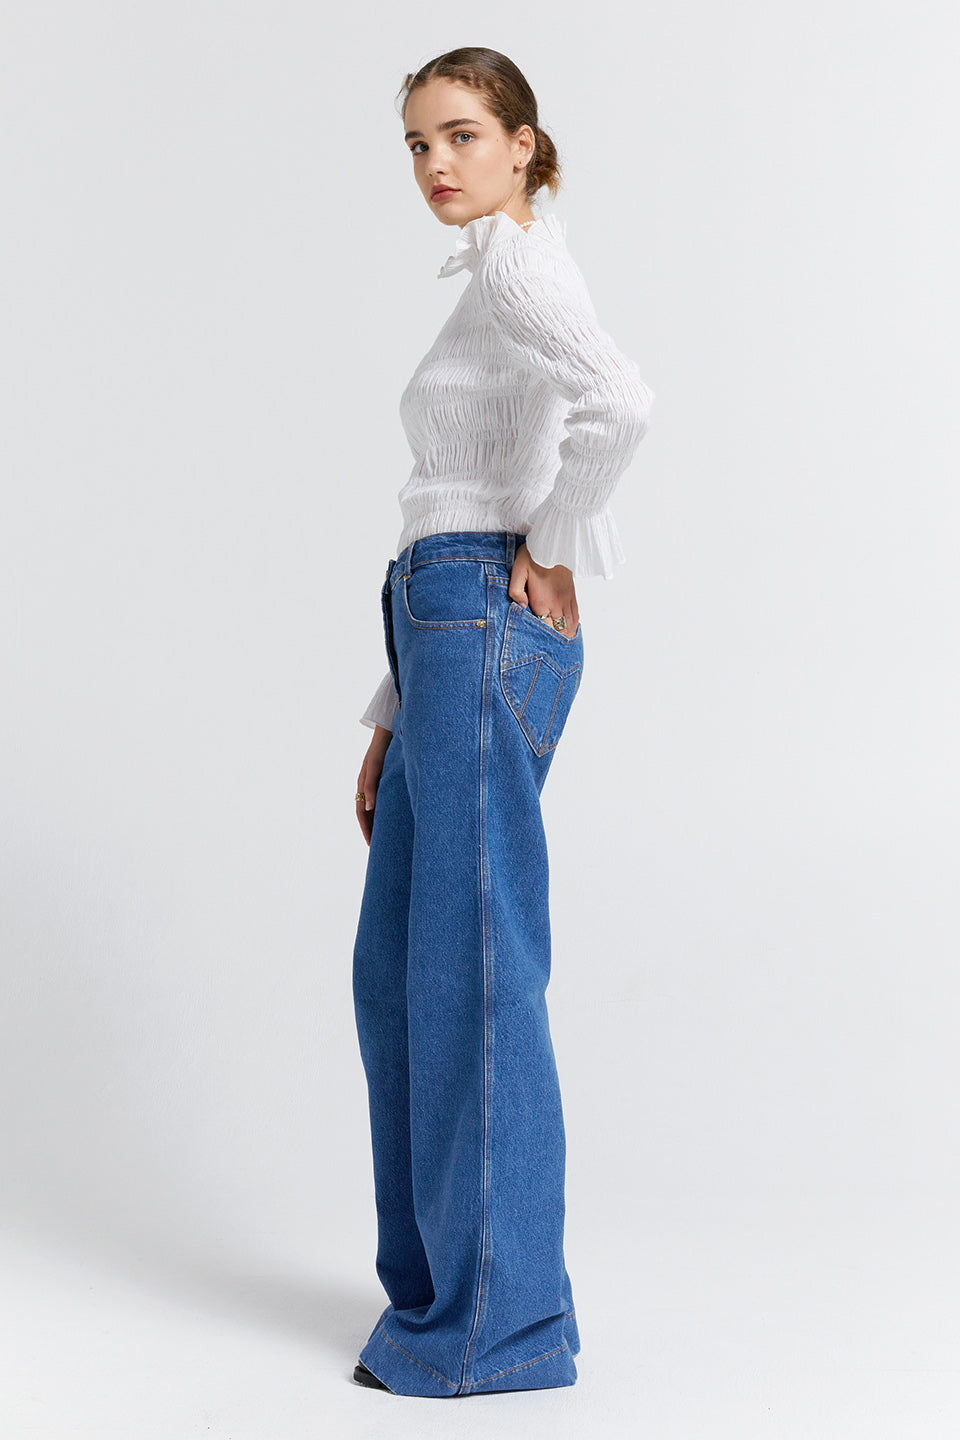 Mod Flared Jeans - Washed Denim